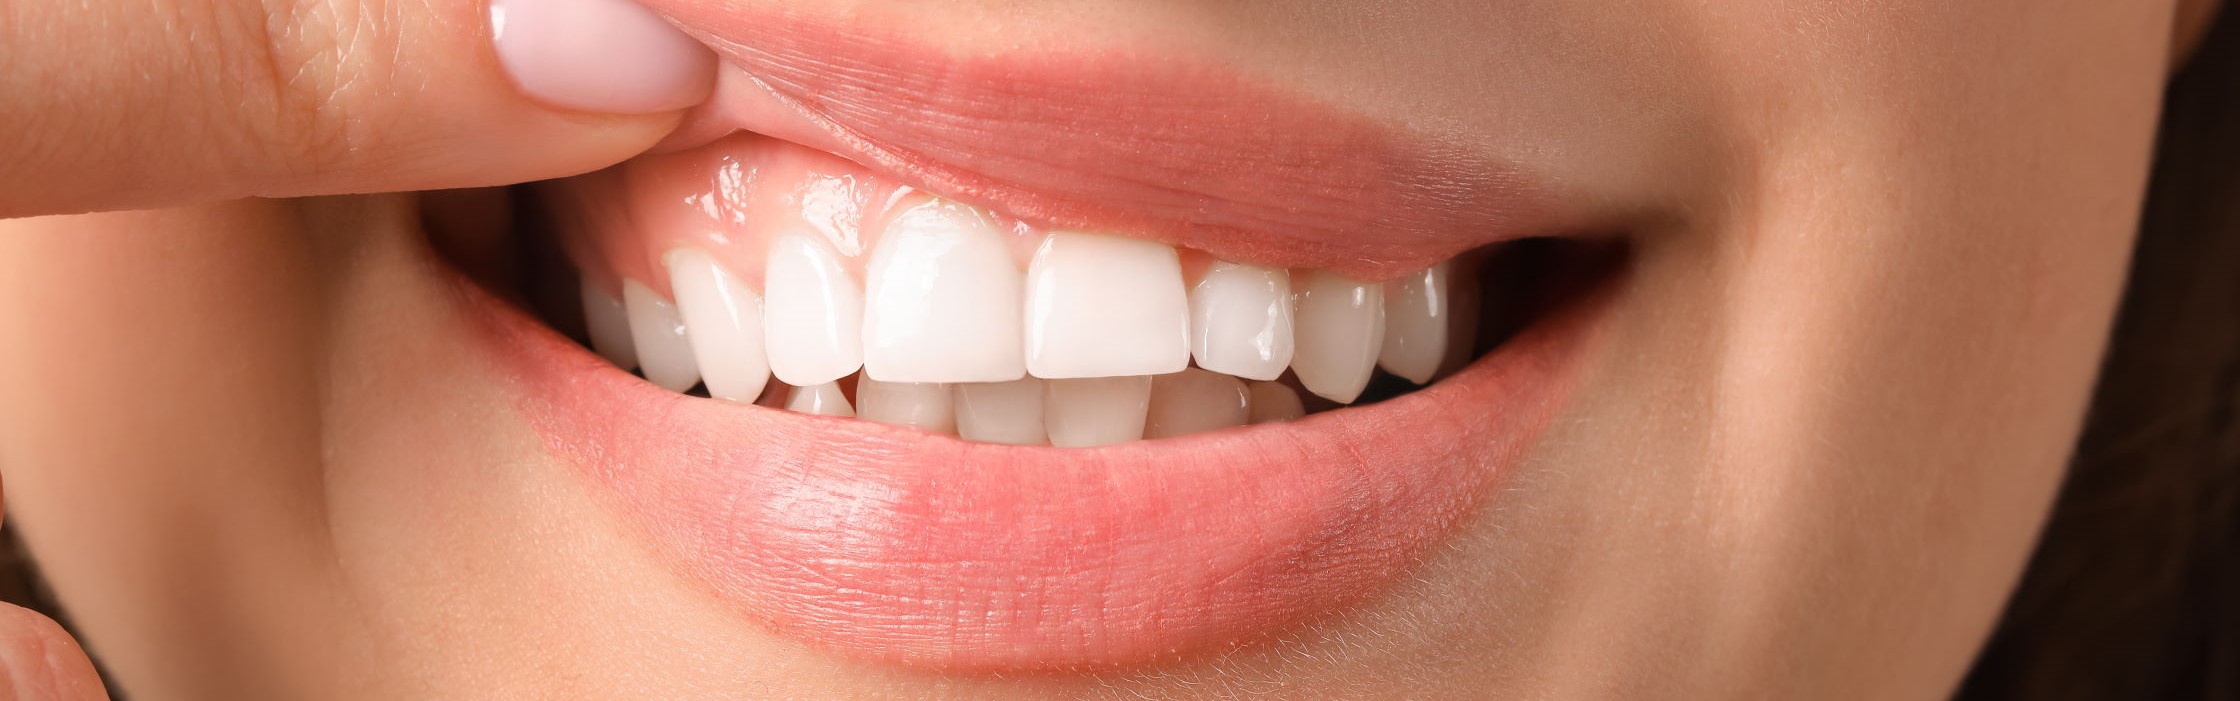 Gummy Smile Korrektur: Endlich wieder unbeschwert lächeln